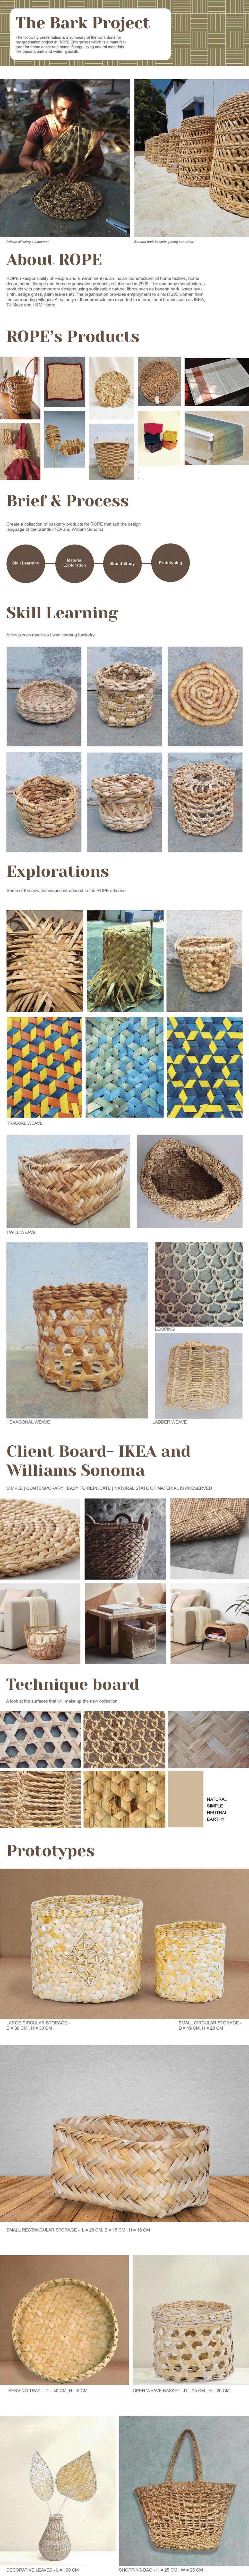 banana bark basketry craft graduation project lampshade Natural Fibres Water hyacinth weaving